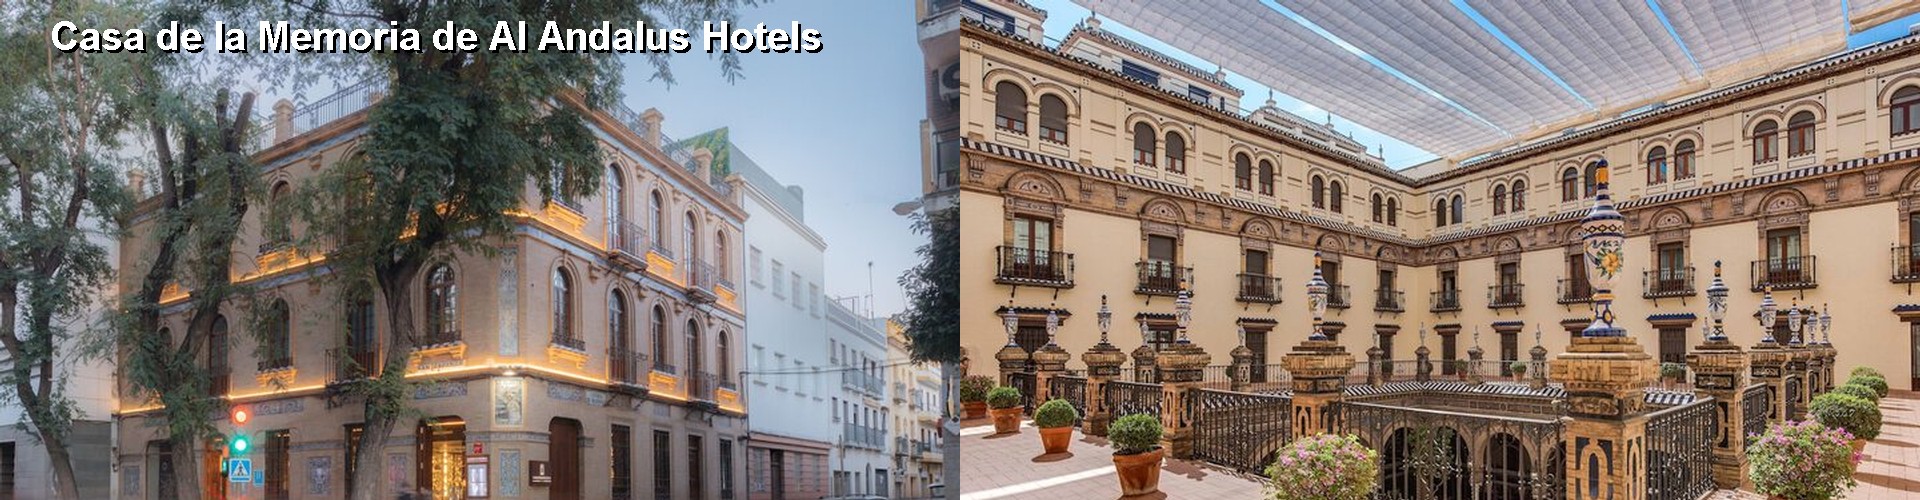 5 Best Hotels near Casa de la Memoria de Al Andalus